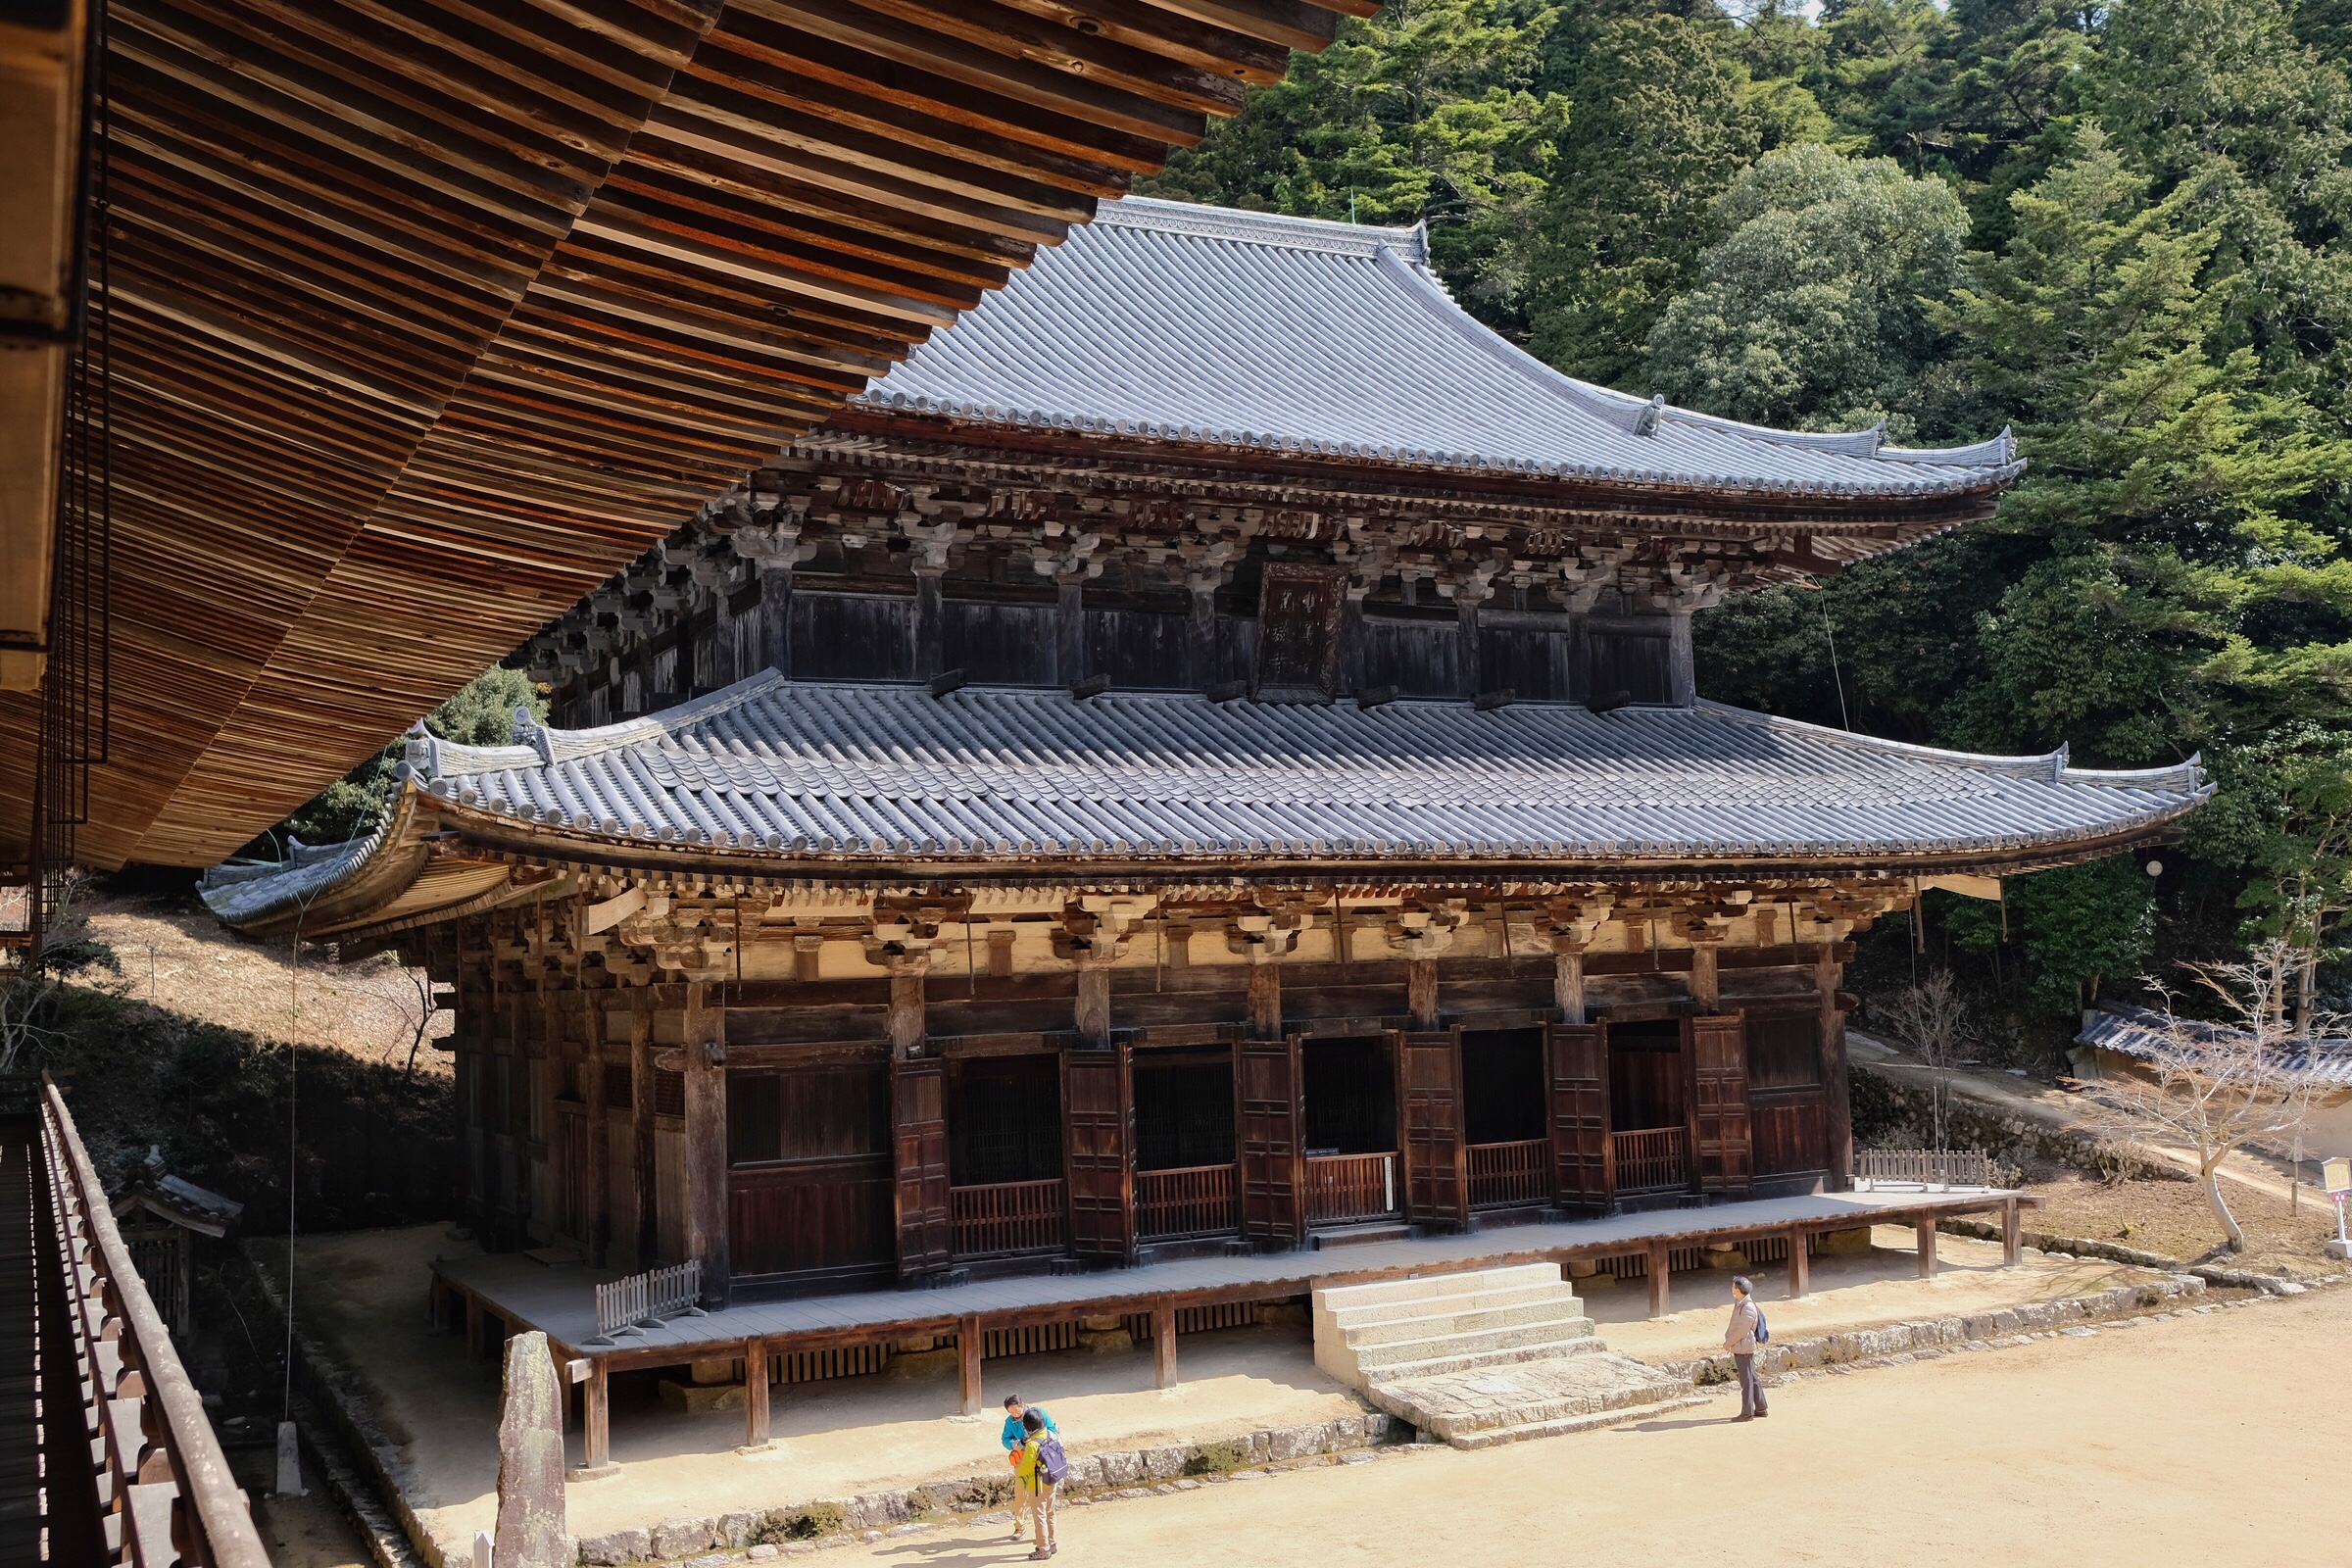 Japan - Himeji - Mount Shosha - Temple